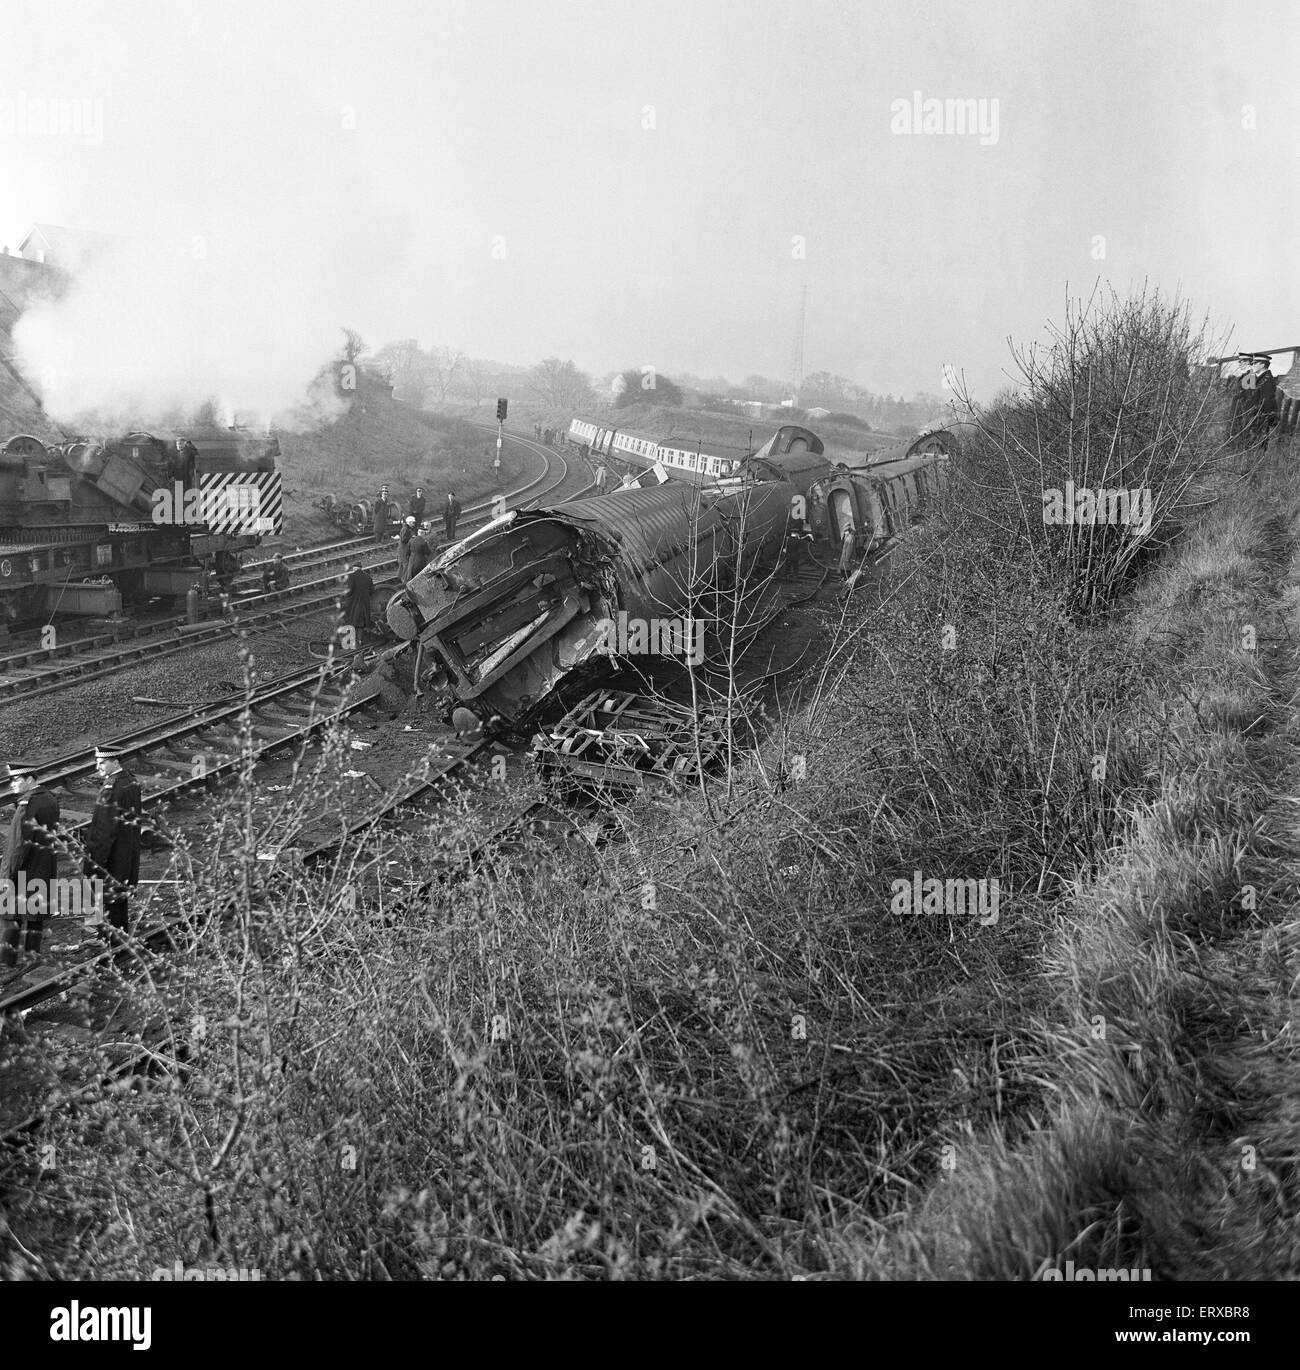 Morpeth Rail Crash auf 7 kann 1969, die eine Richtung Norden Schläfer Expresszug von London nach Aberdeen auf der Morpeth entgleist Kurve. Sechs Personen wurden getötet, 21 wurden verletzt und das Dach in nördlicher Richtung Bahnsteig wurde beschädigt. Stockfoto